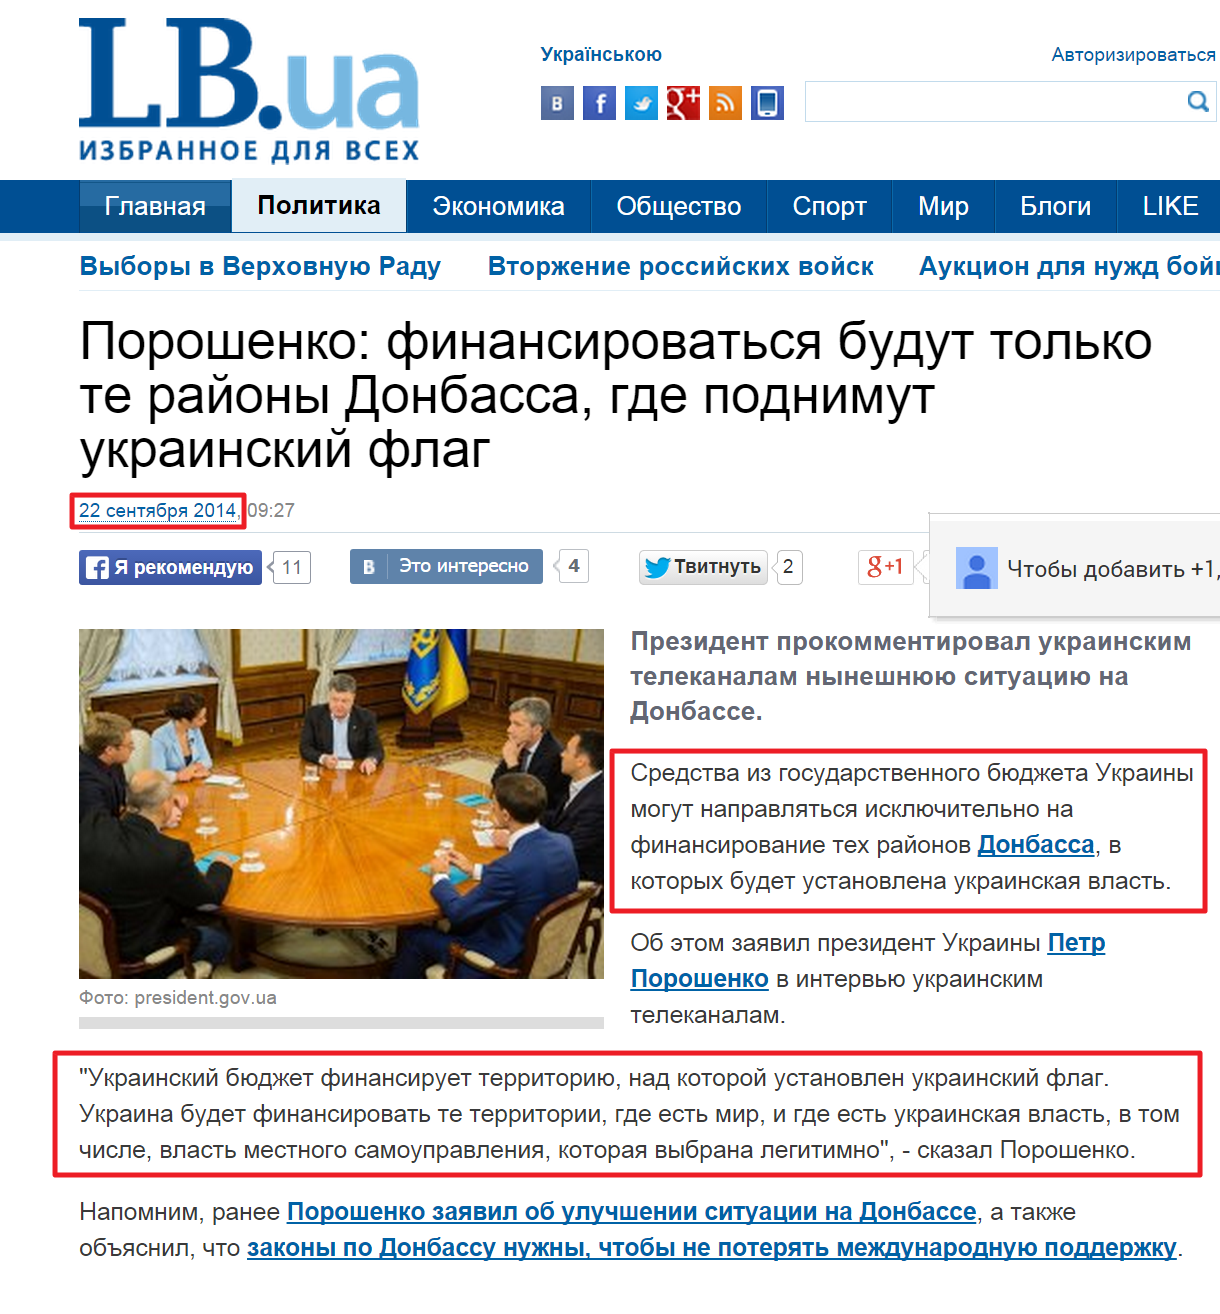 http://lb.ua/news/2014/09/22/280109_poroshenko_finansirovatsya.html